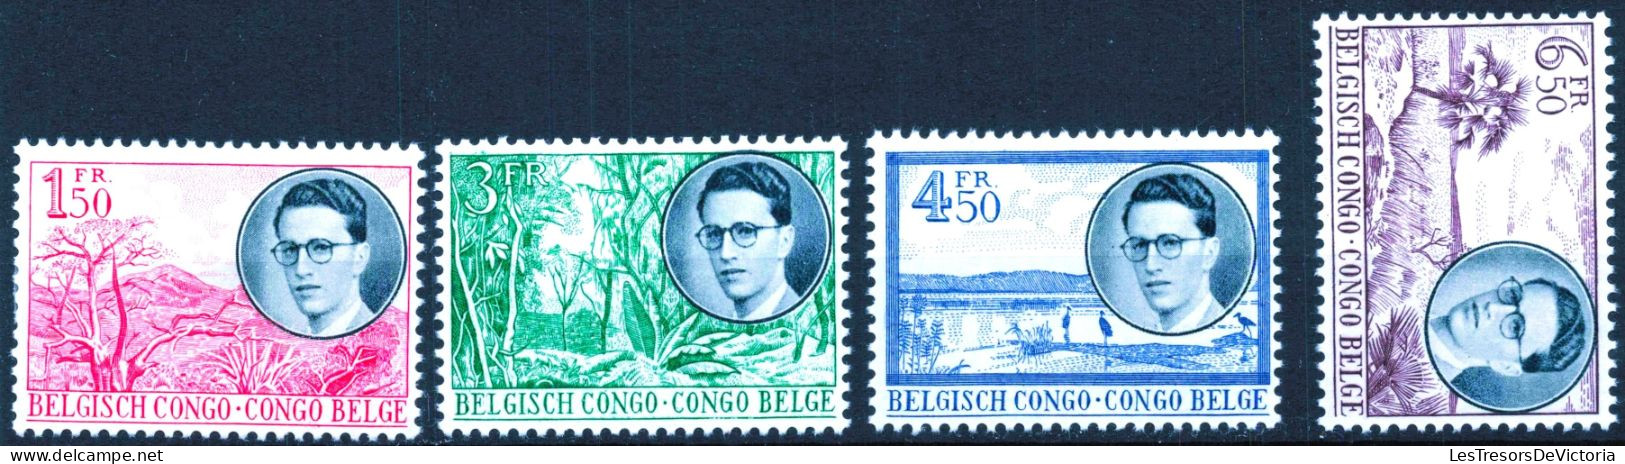 Timbre - Belgique - COB 329/36* -1955 - Voyage Royal Au Congo Predominance Néerlandaise Et Française - Cote 32 - Neufs